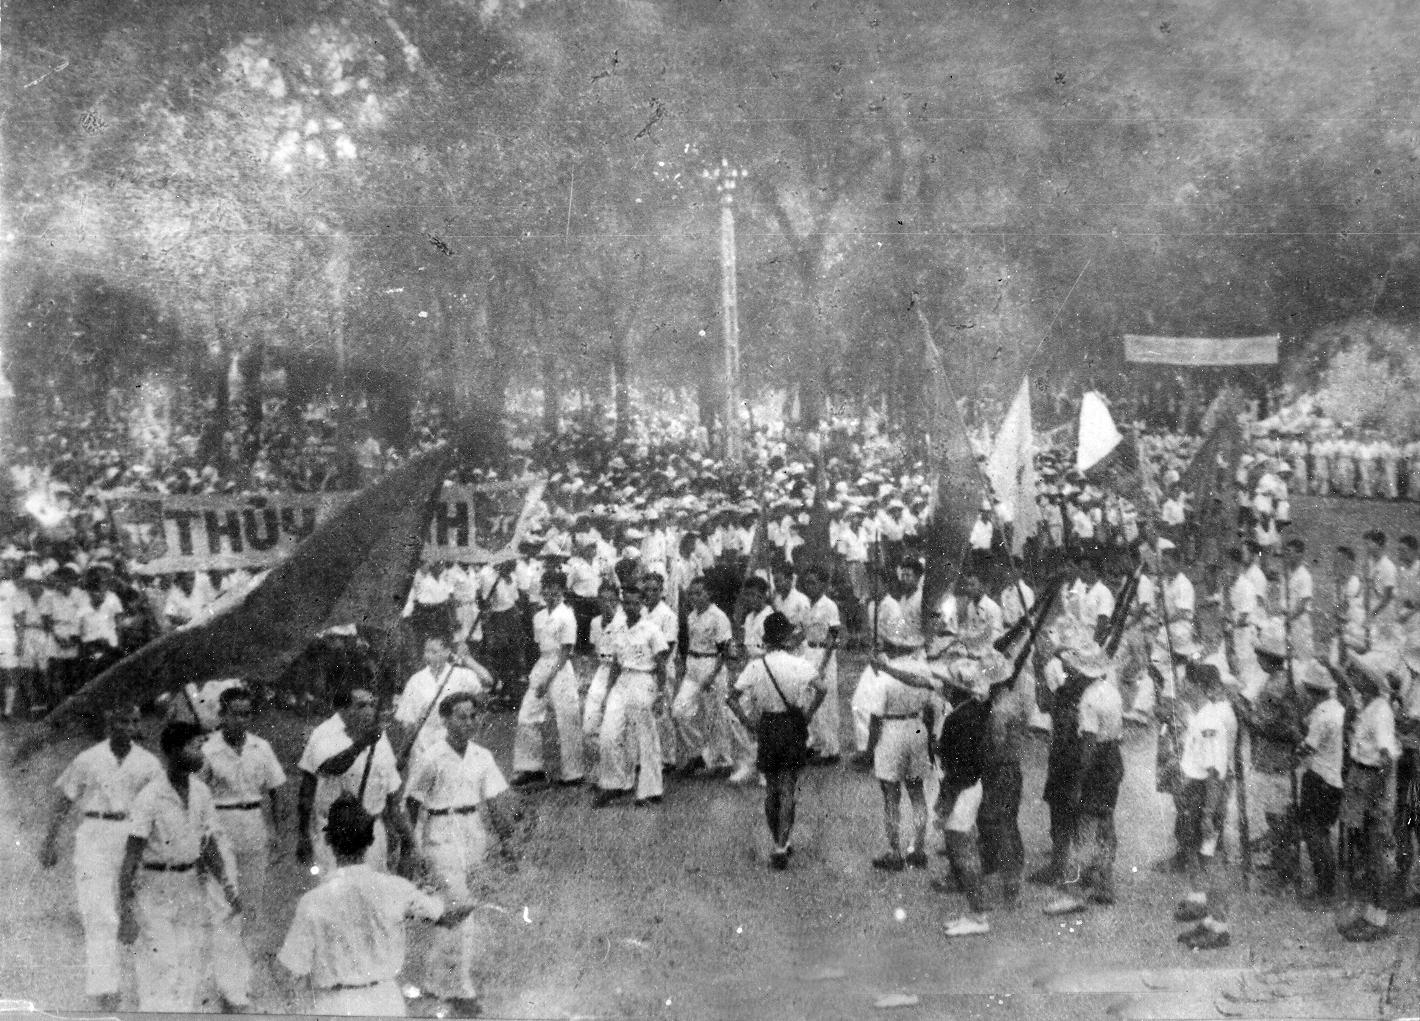 Nhân dân Sài Gòn - Gia Định nổi dậy giành chính quyền trong cách mạng Tháng Tám 1945